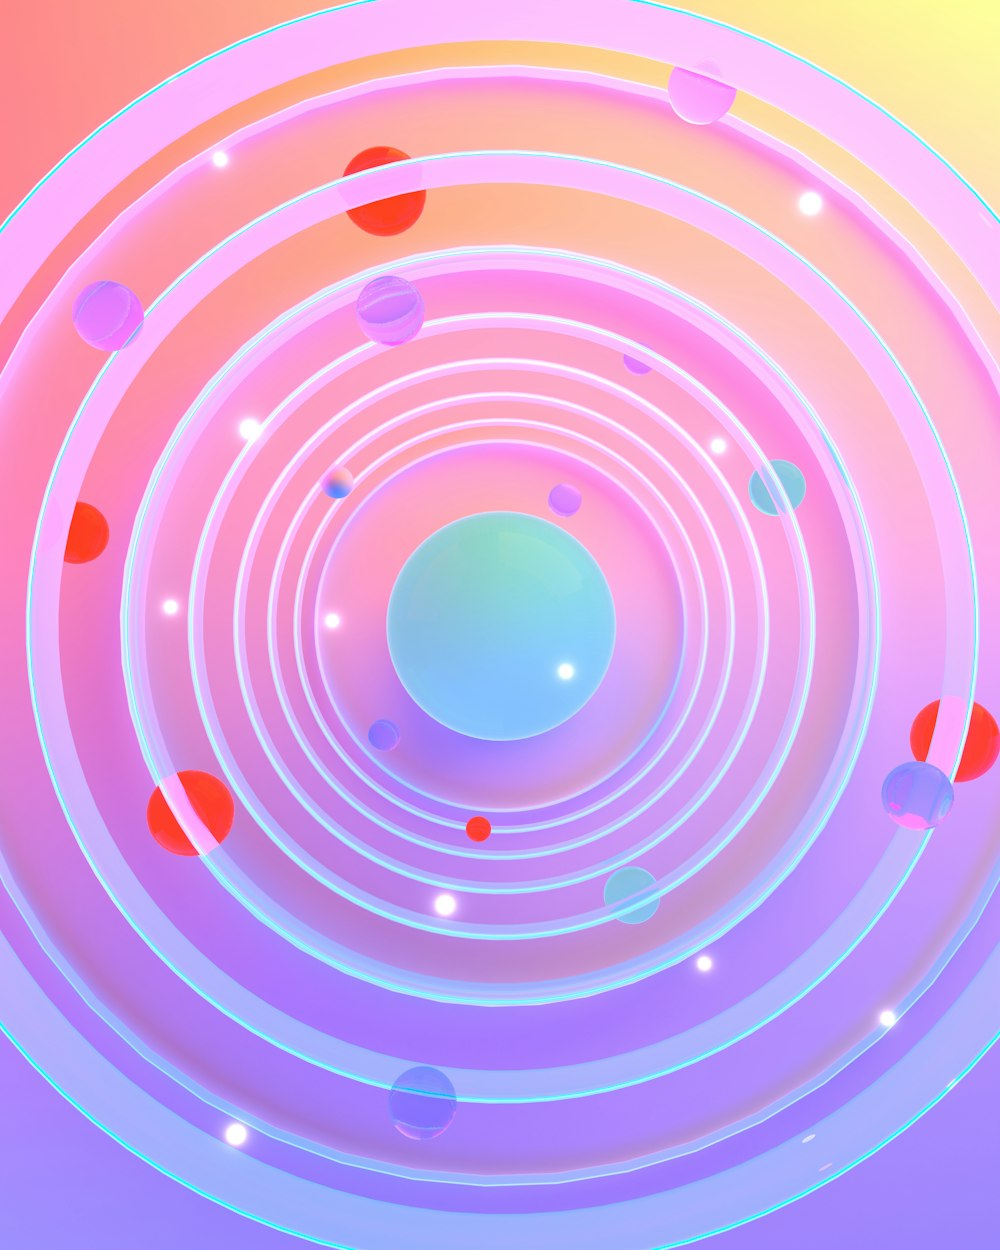 Una foto astratta di un oggetto circolare con un centro blu